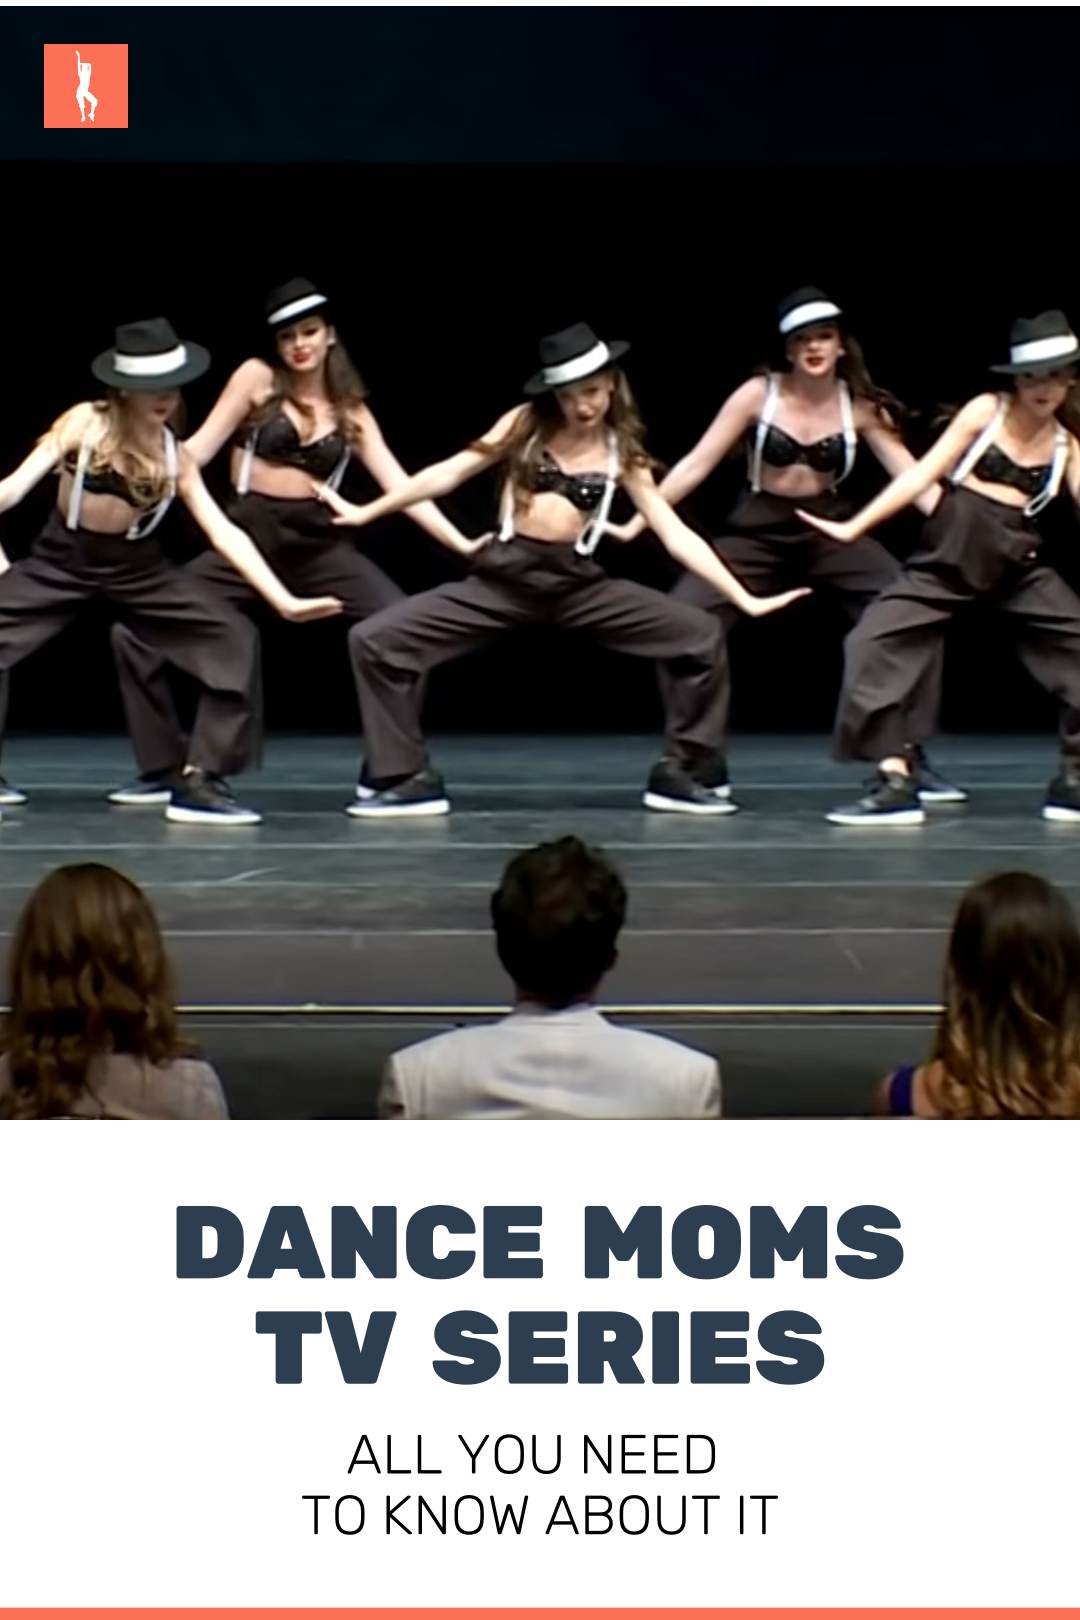 Dance moms tv show